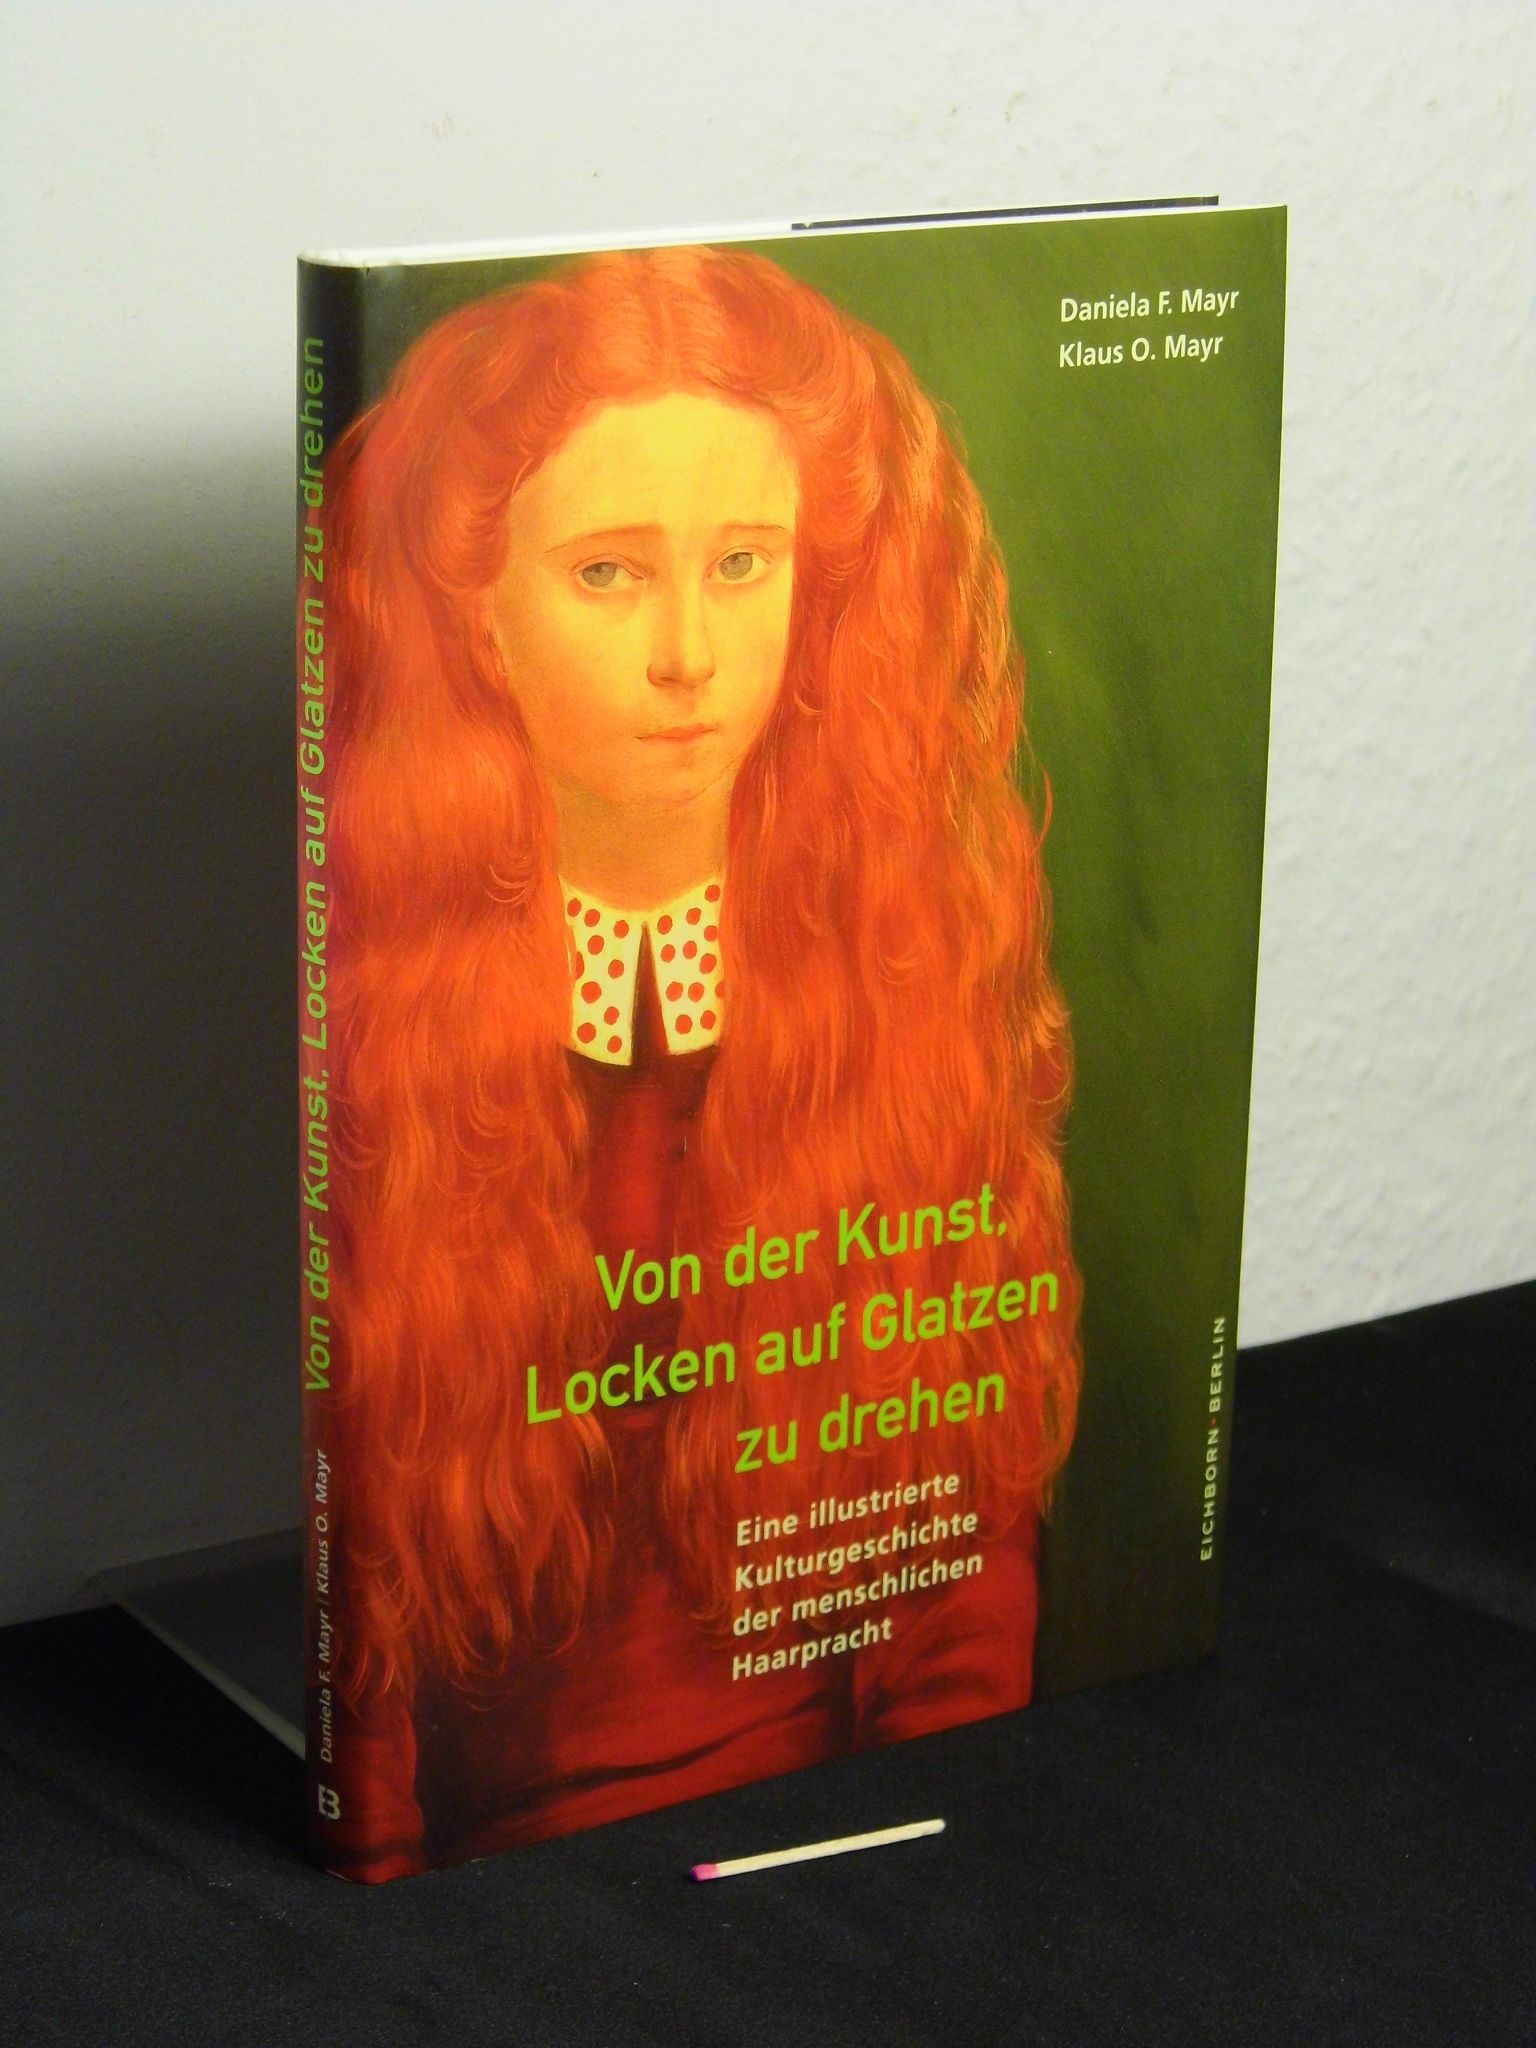 Von der Kunst, Locken auf Glatzen zu drehen - eine illustrierte Kulturgeschichte der menschlichen Haarpracht - - Mayr, Daniela F. und Klaus O. -